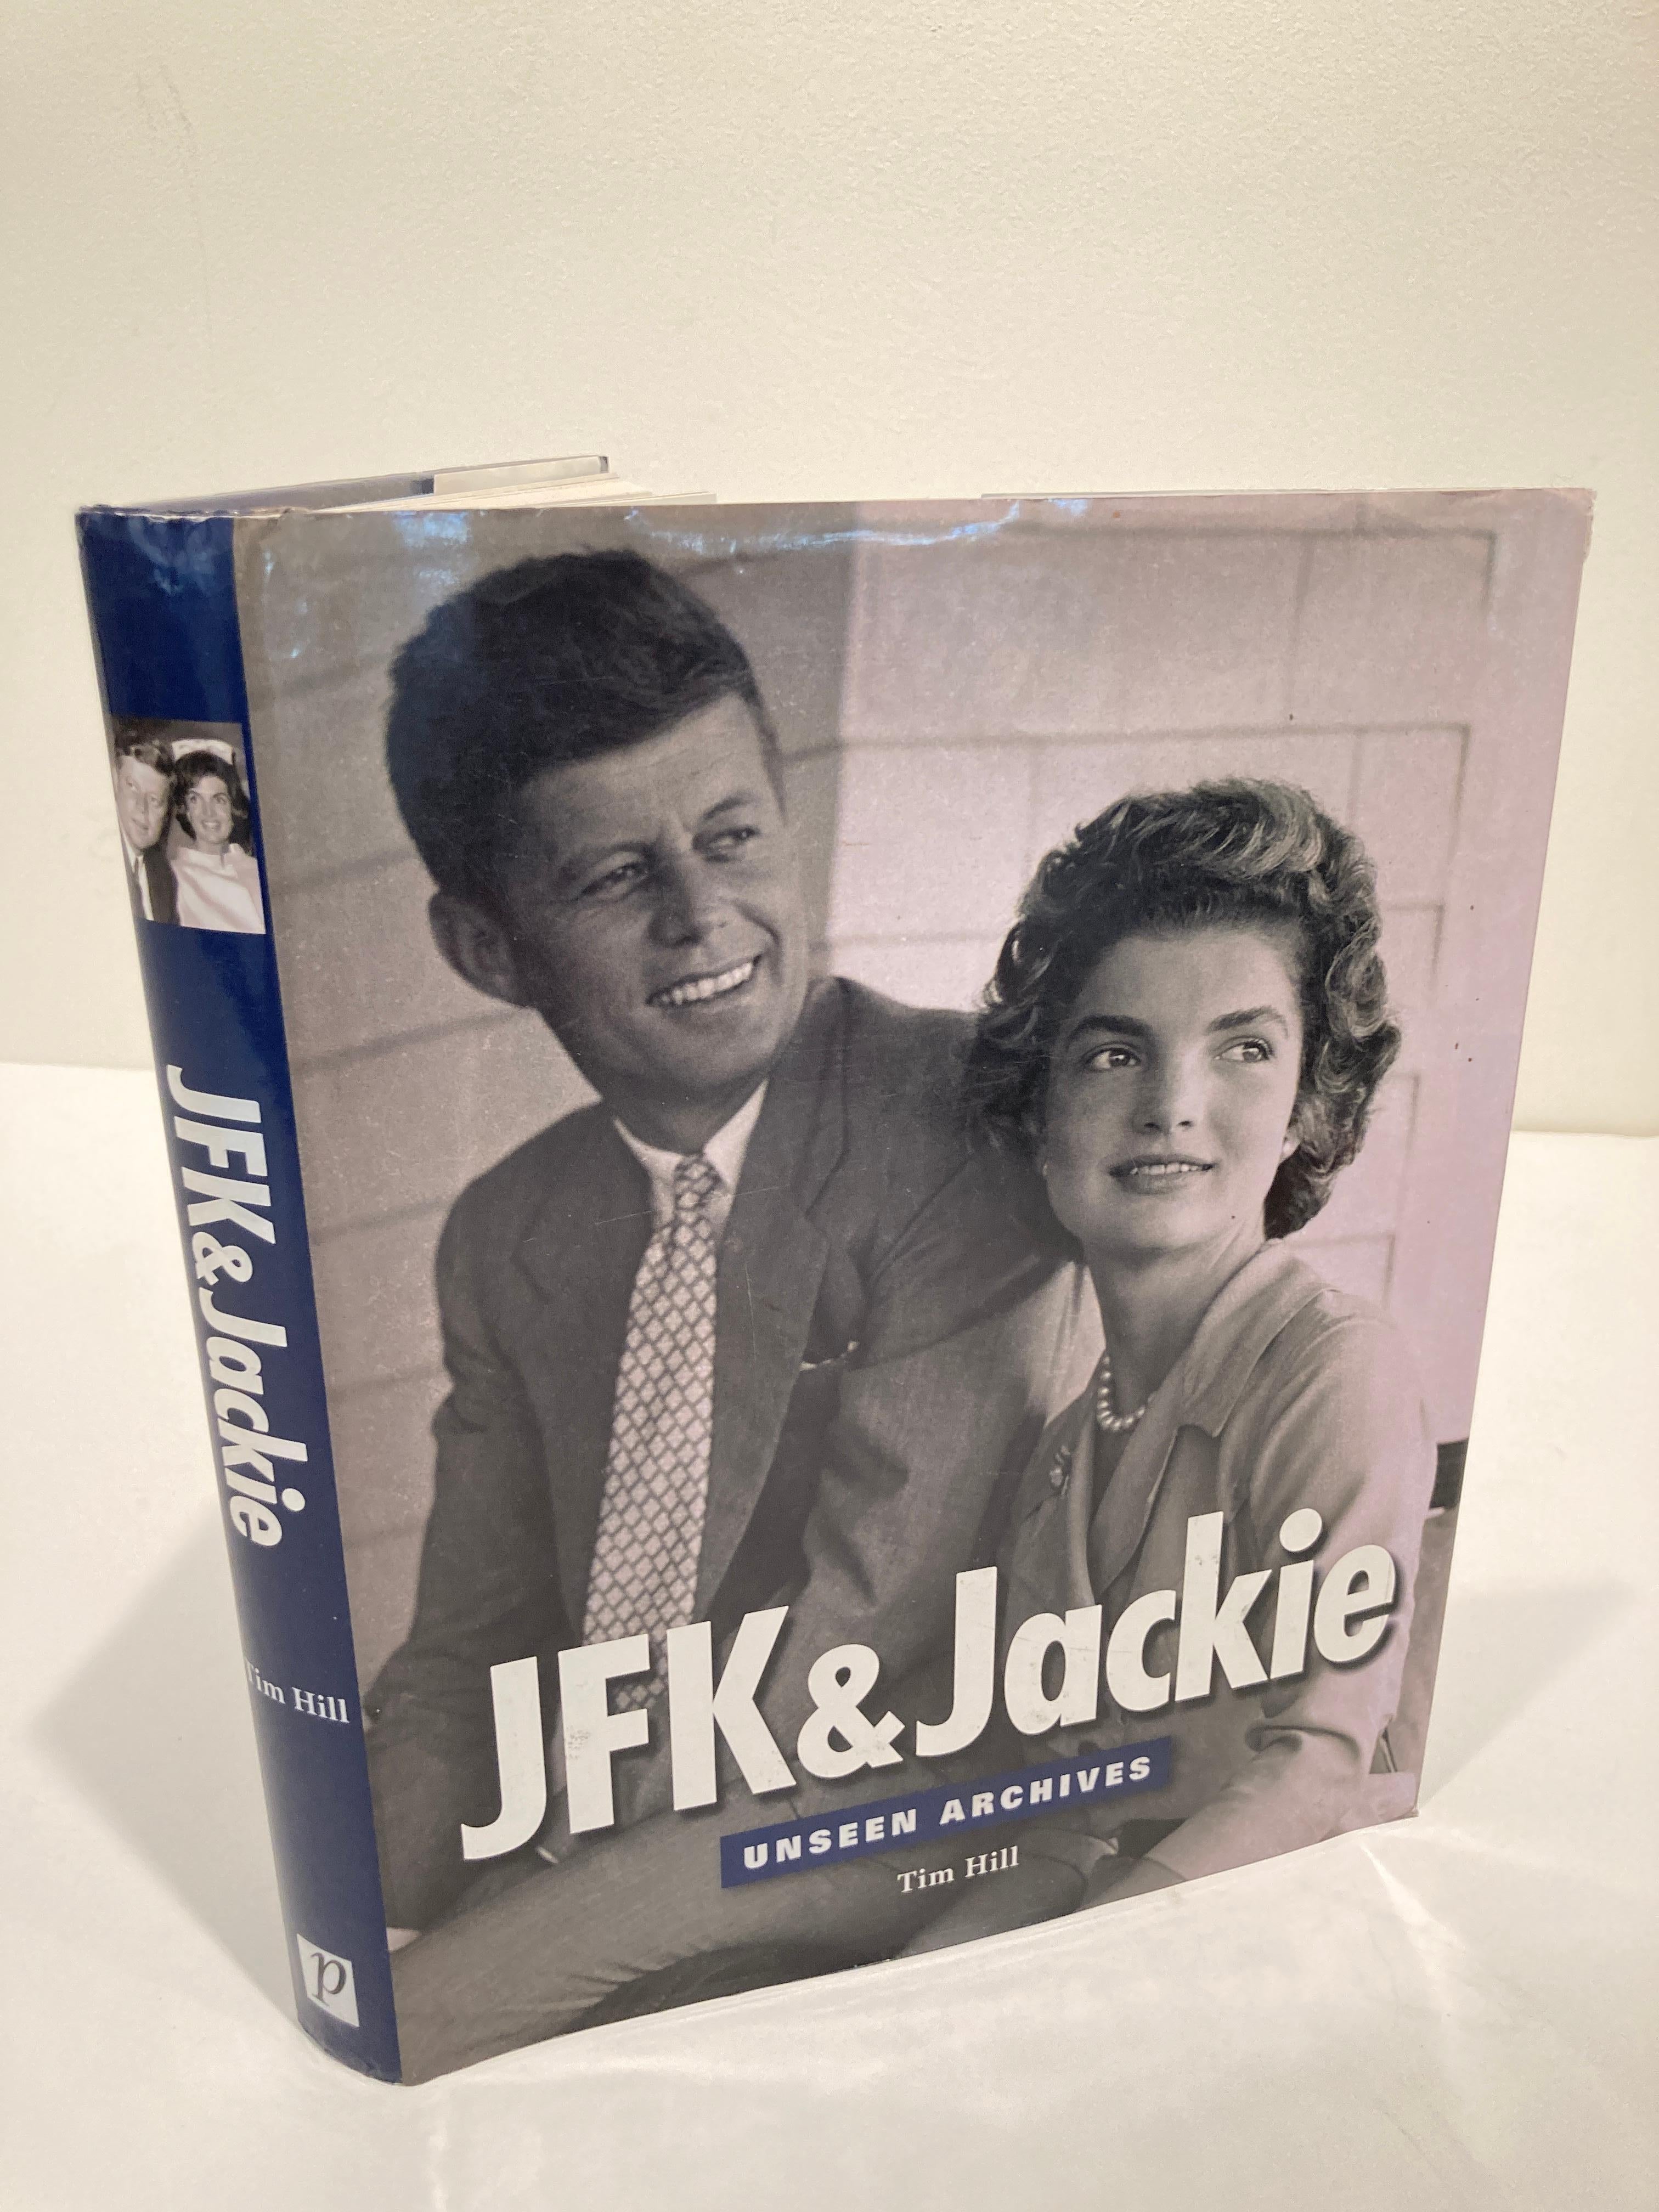 JFK & Jackie. Unseen Archives par Tim Hill.
Londres : Parragon, Incorporated, 2003. Première édition ; première impression. Couverture rigide.
JFK et Jackie : des archives inédites retrace l'ascension au pouvoir d'un géant de la politique. 
Il